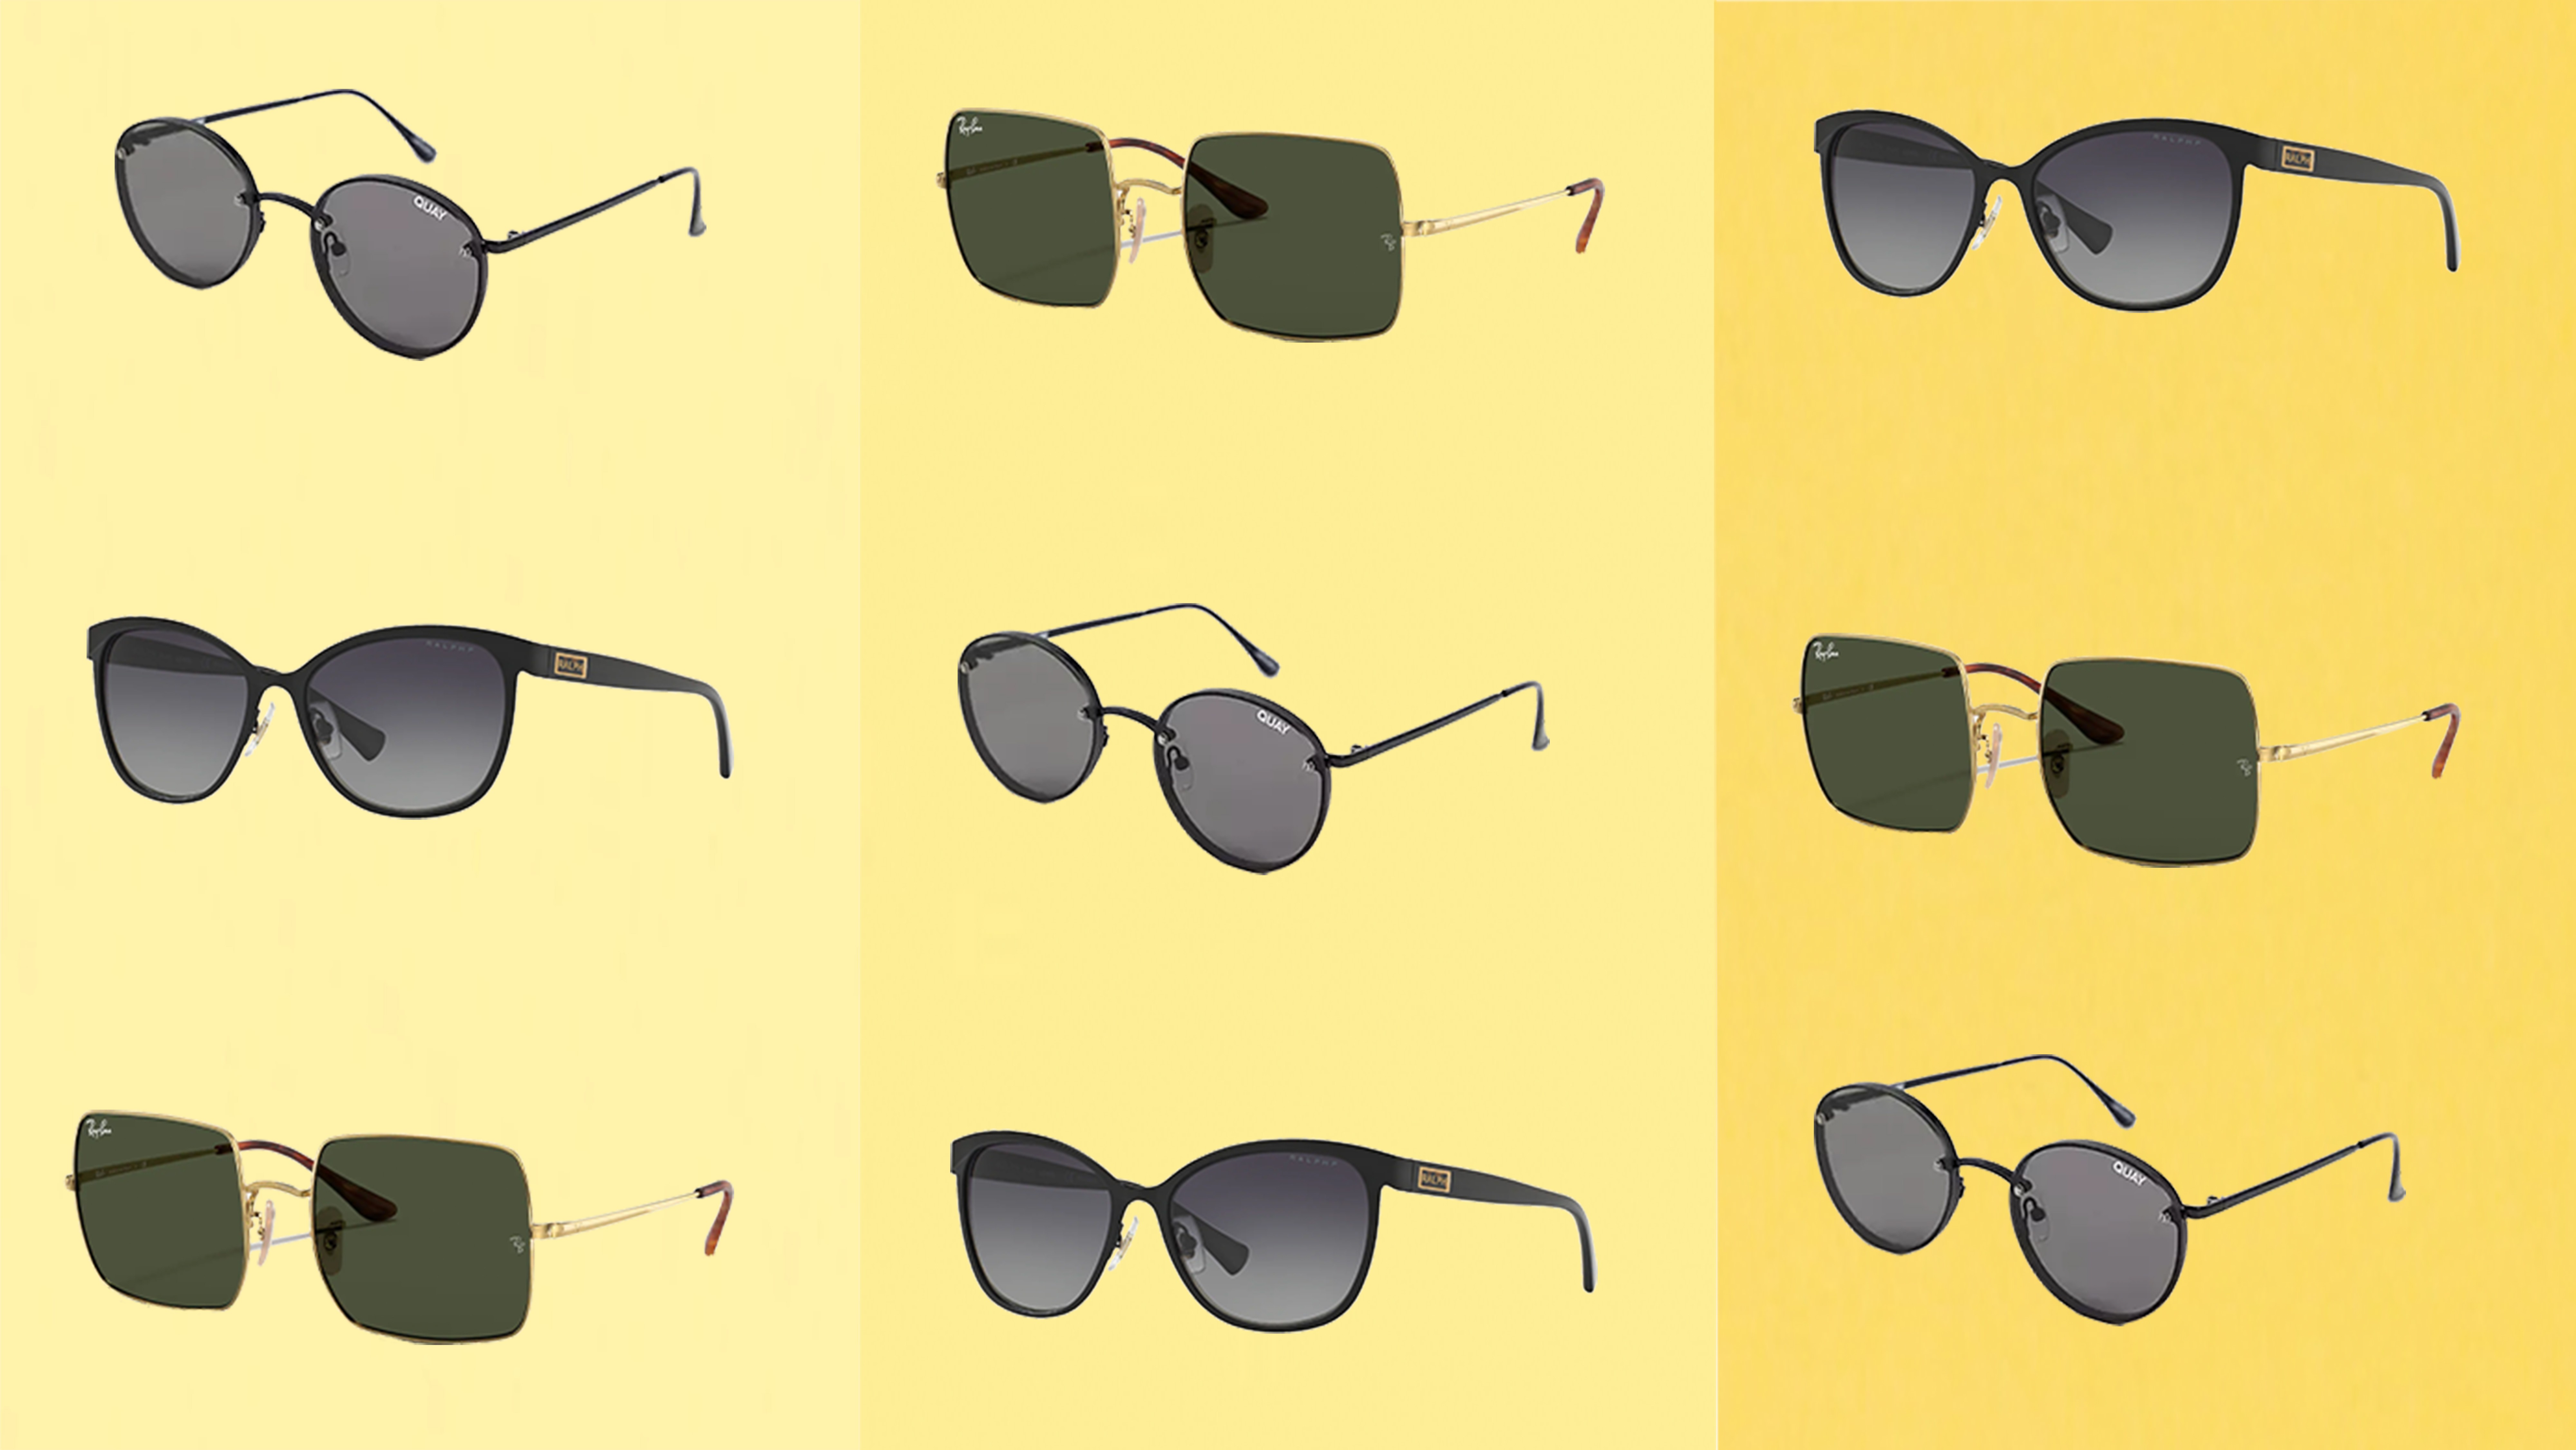 About Vintage Sunglasses | classic:specs